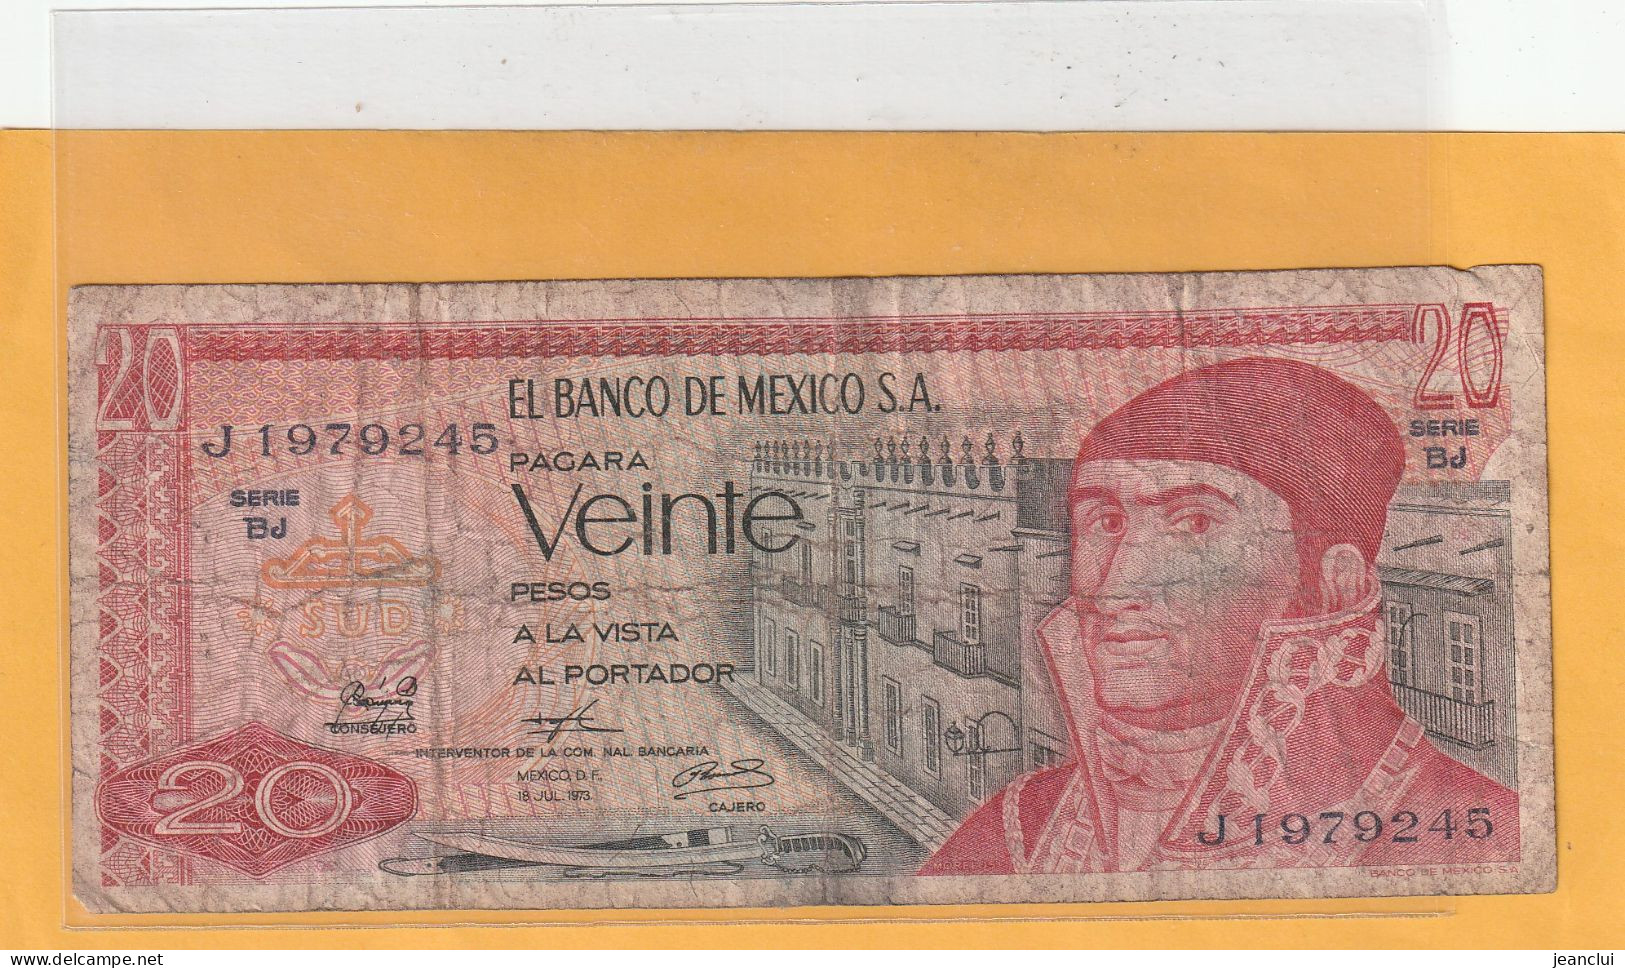 EL BANCO DE MEXICO S.A.   .  20 PESOS  .  18-7-1973  .  N°  J 1979245 .  2 SCANNES  .  BILLET TRES USITE - Mexico